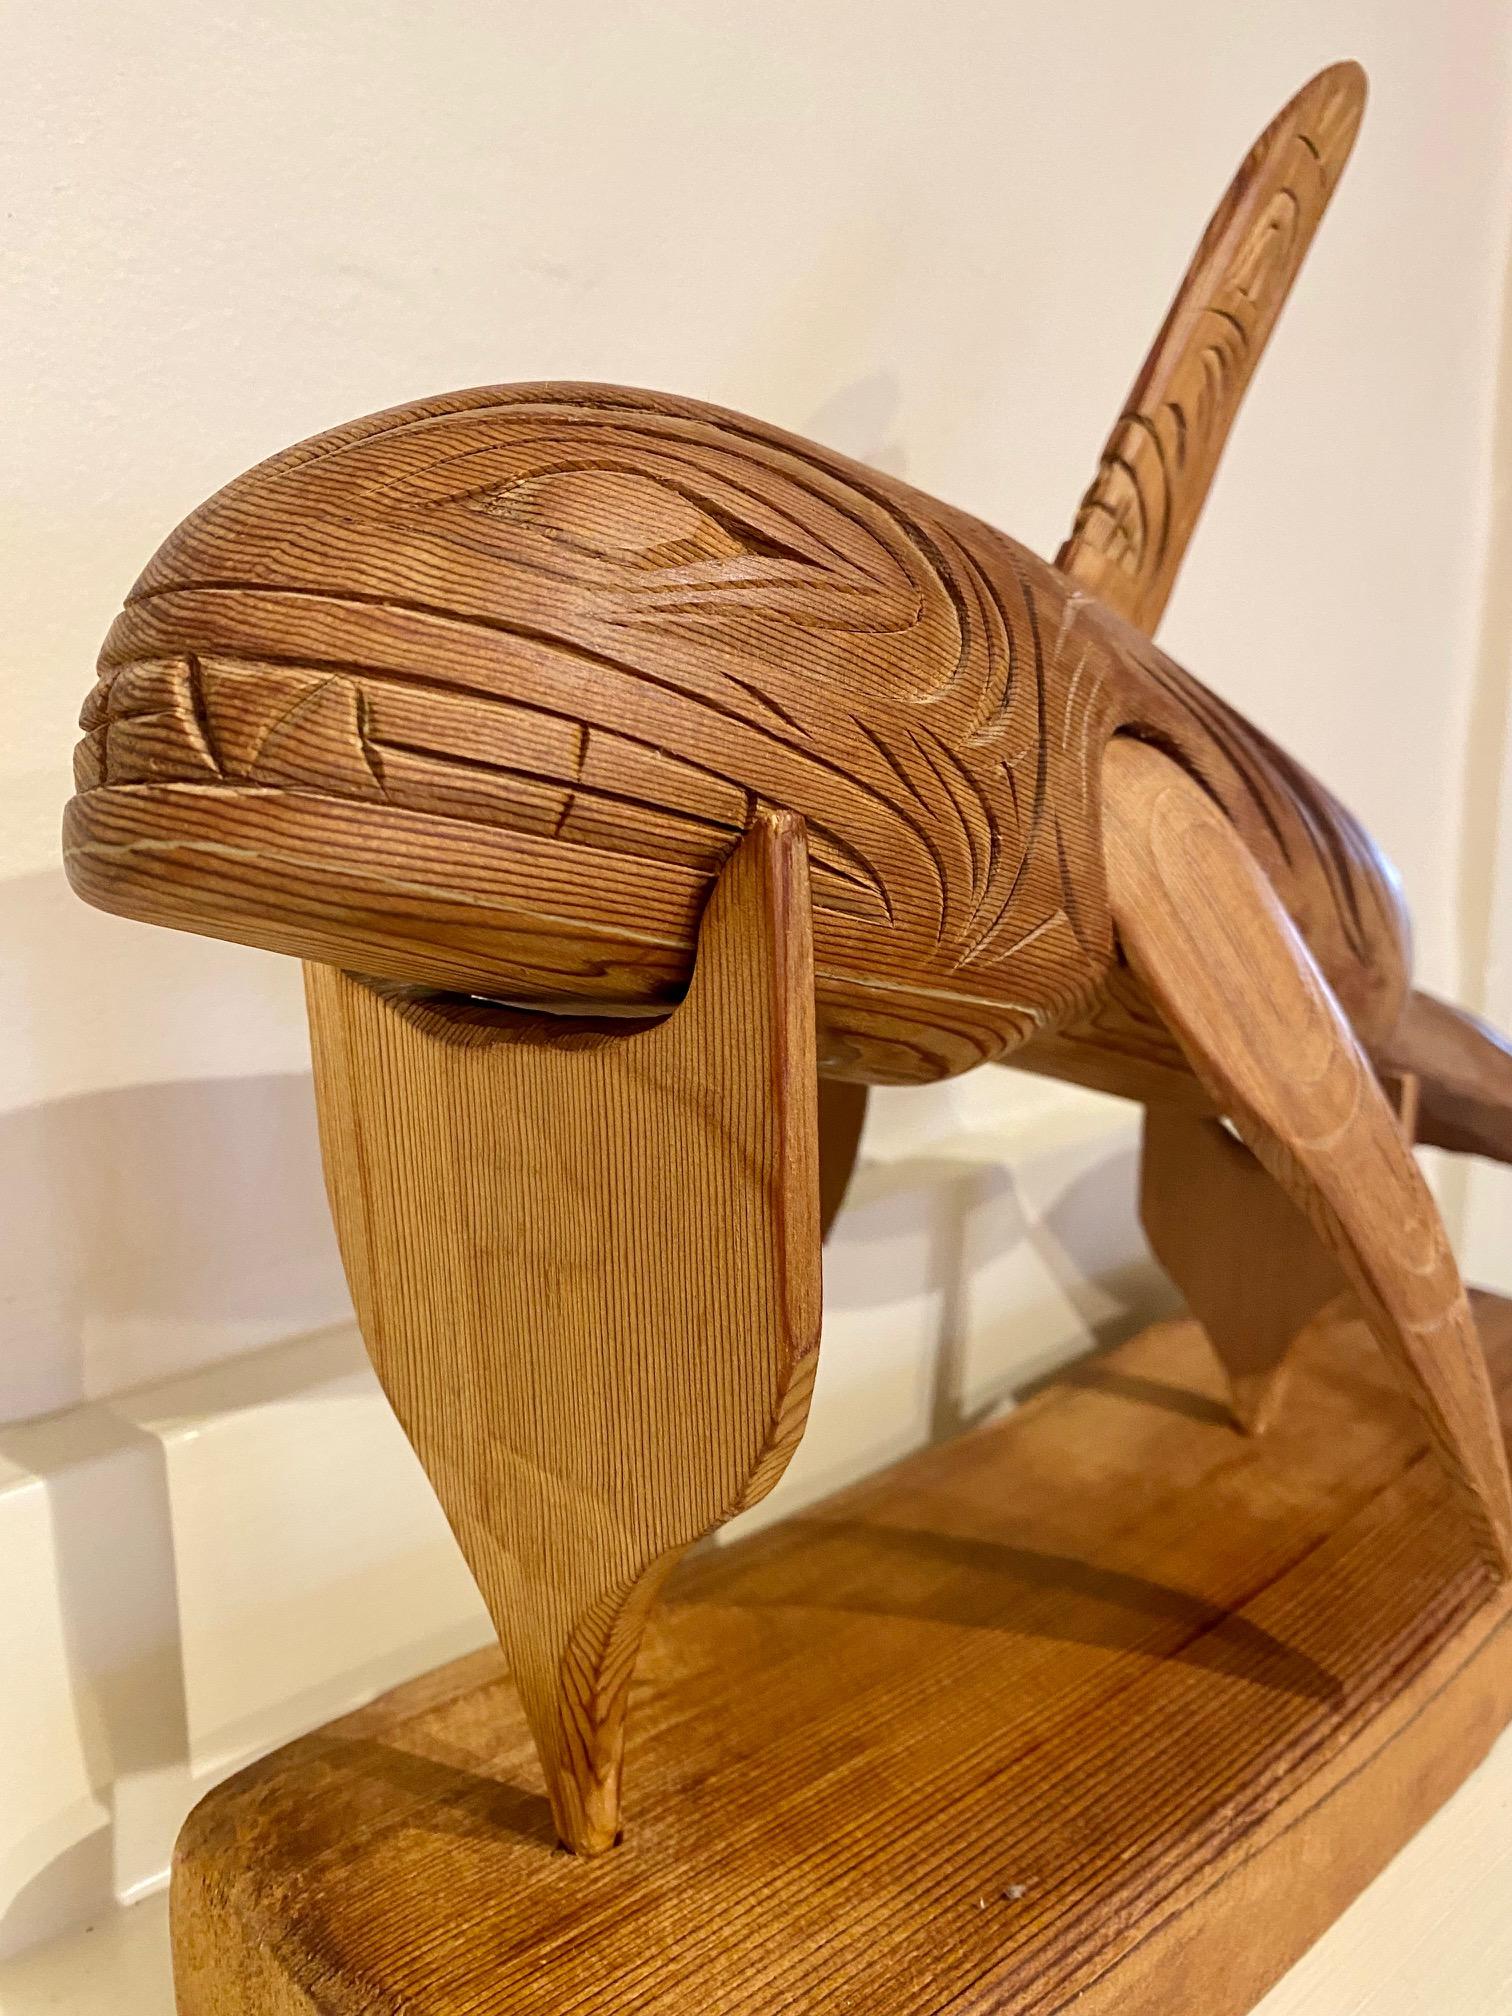 Hochet d'orque en cèdre sculpté de la côte du Pacifique Nord-Ouest, par l'artiste Coastal Salish - Squamish Stan Joseph, signé et daté 2012, un beau hochet de danse en cèdre creux profondément sculpté en forme d'orque, avec des yeux et une bouche